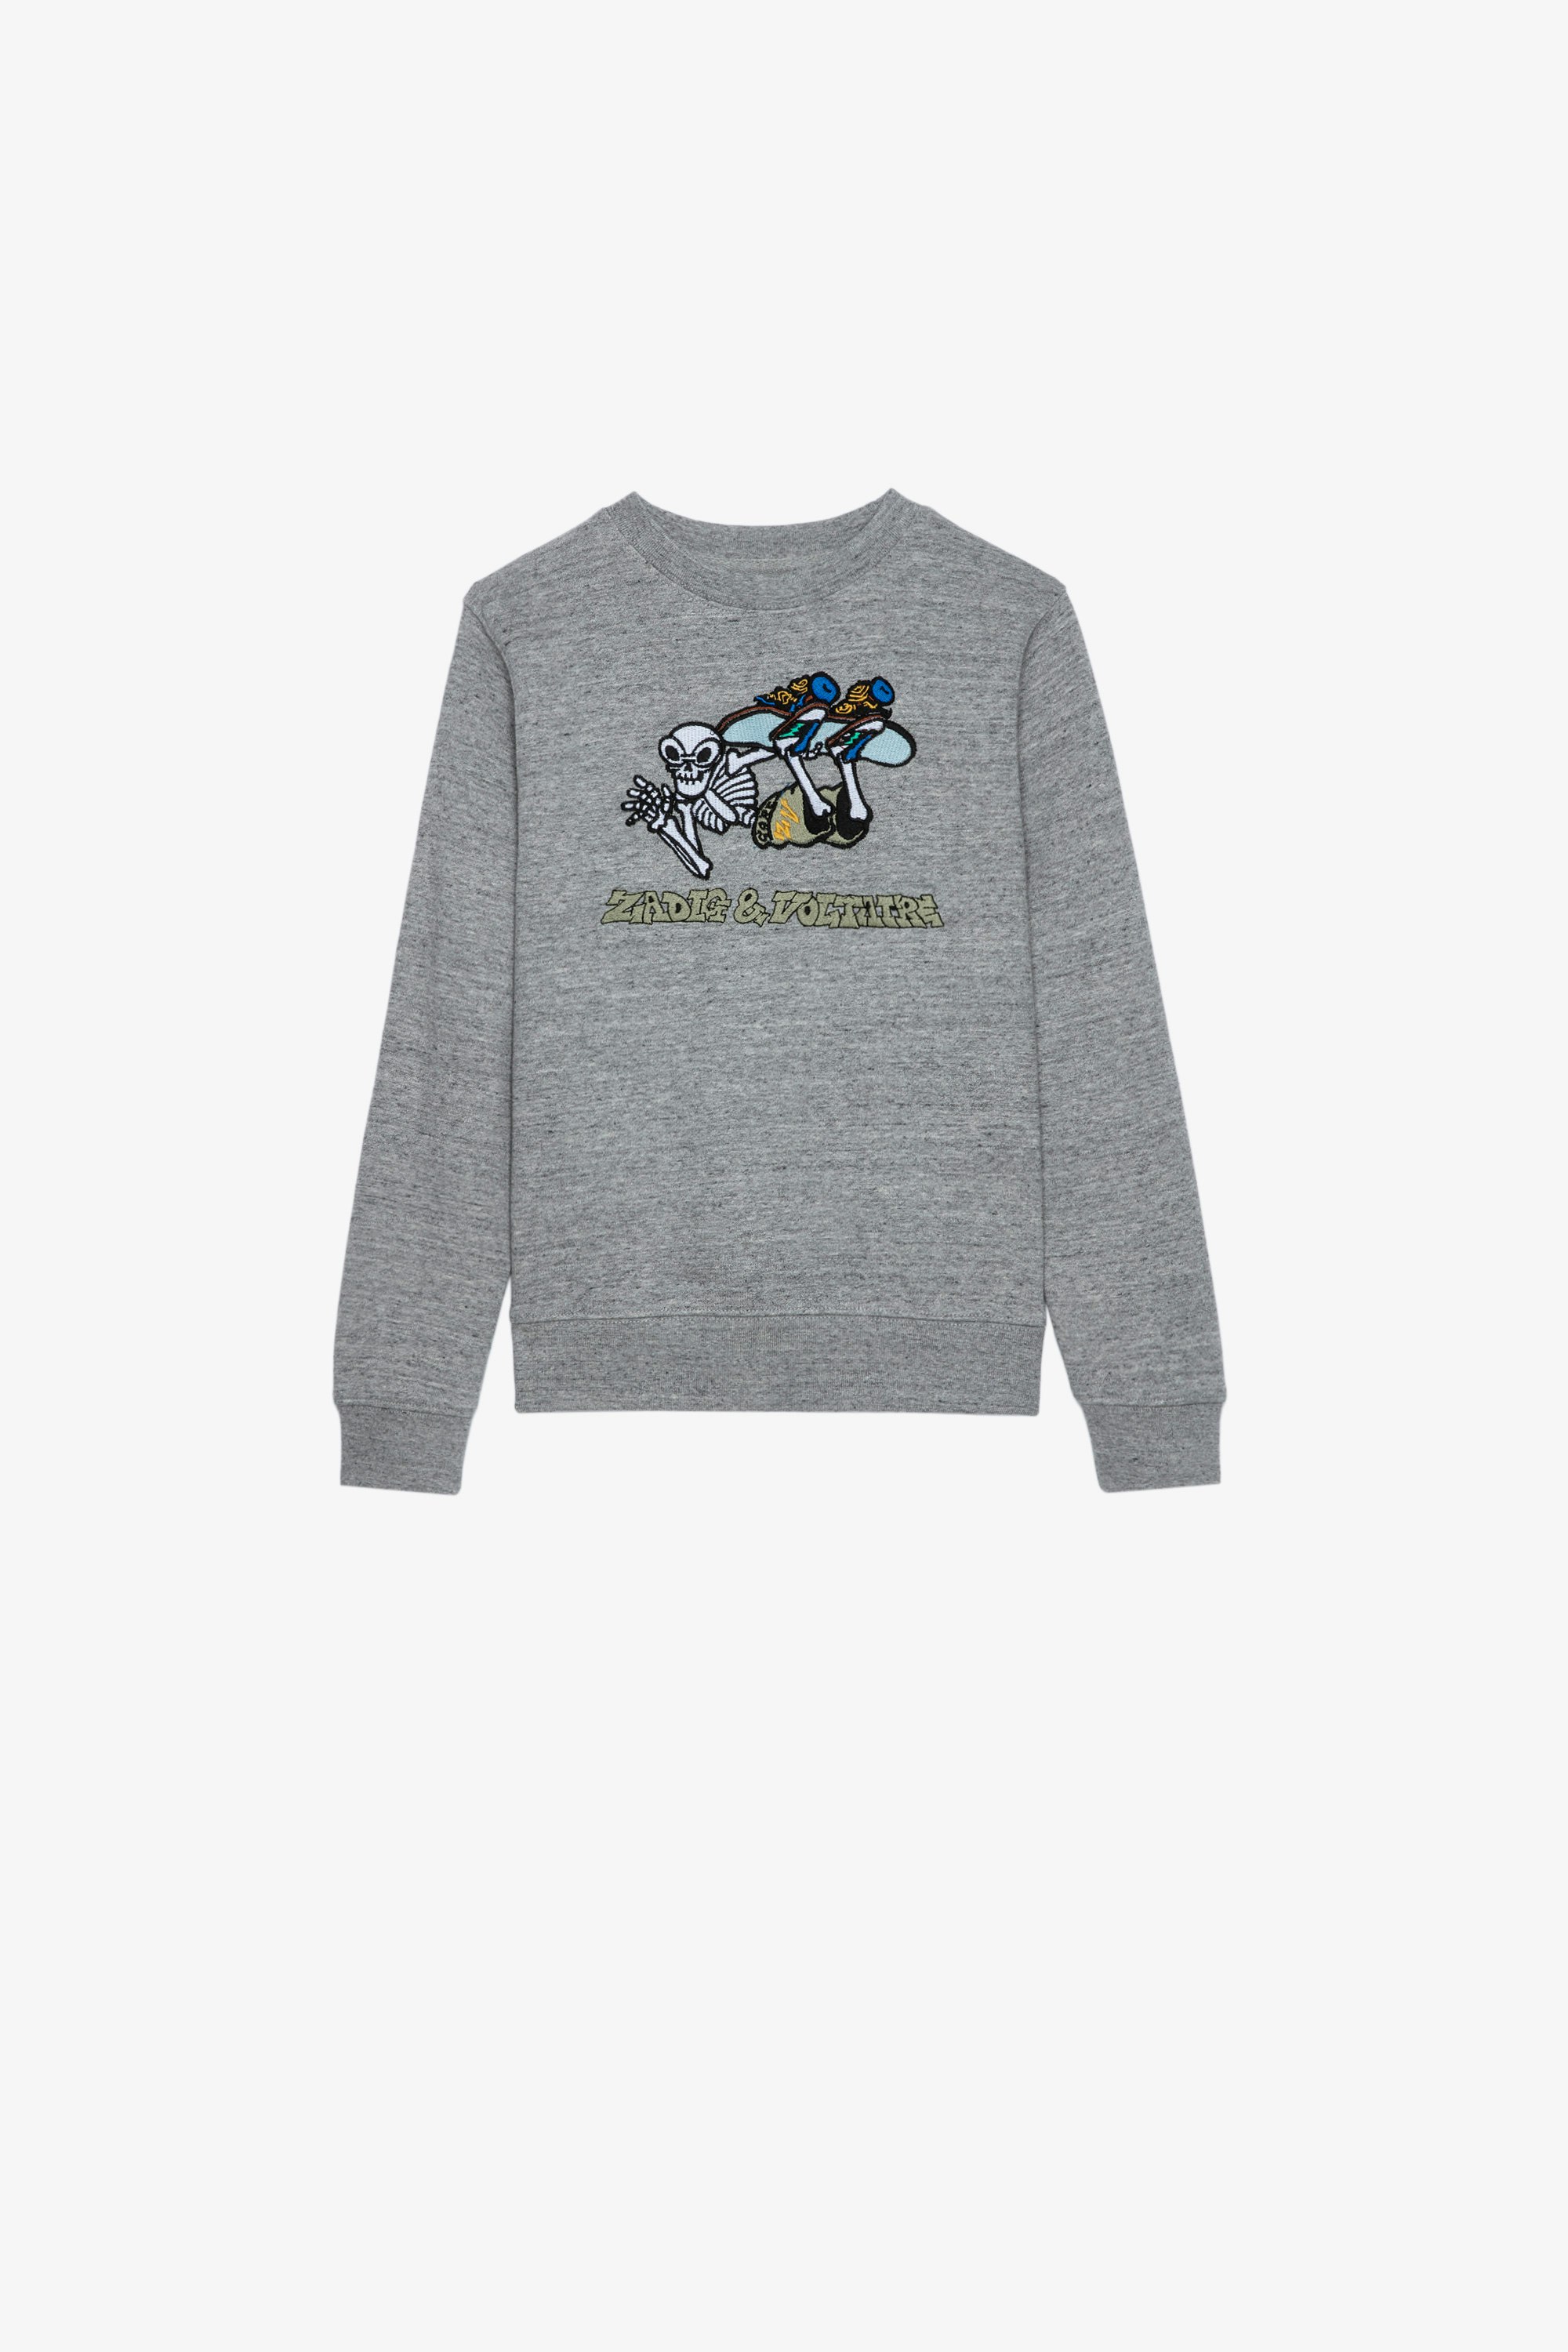 Kinder-Sweatshirt Simba Kinder-Sweatshirt aus grauer Baumwolle mit einem Motiv von Core Cho